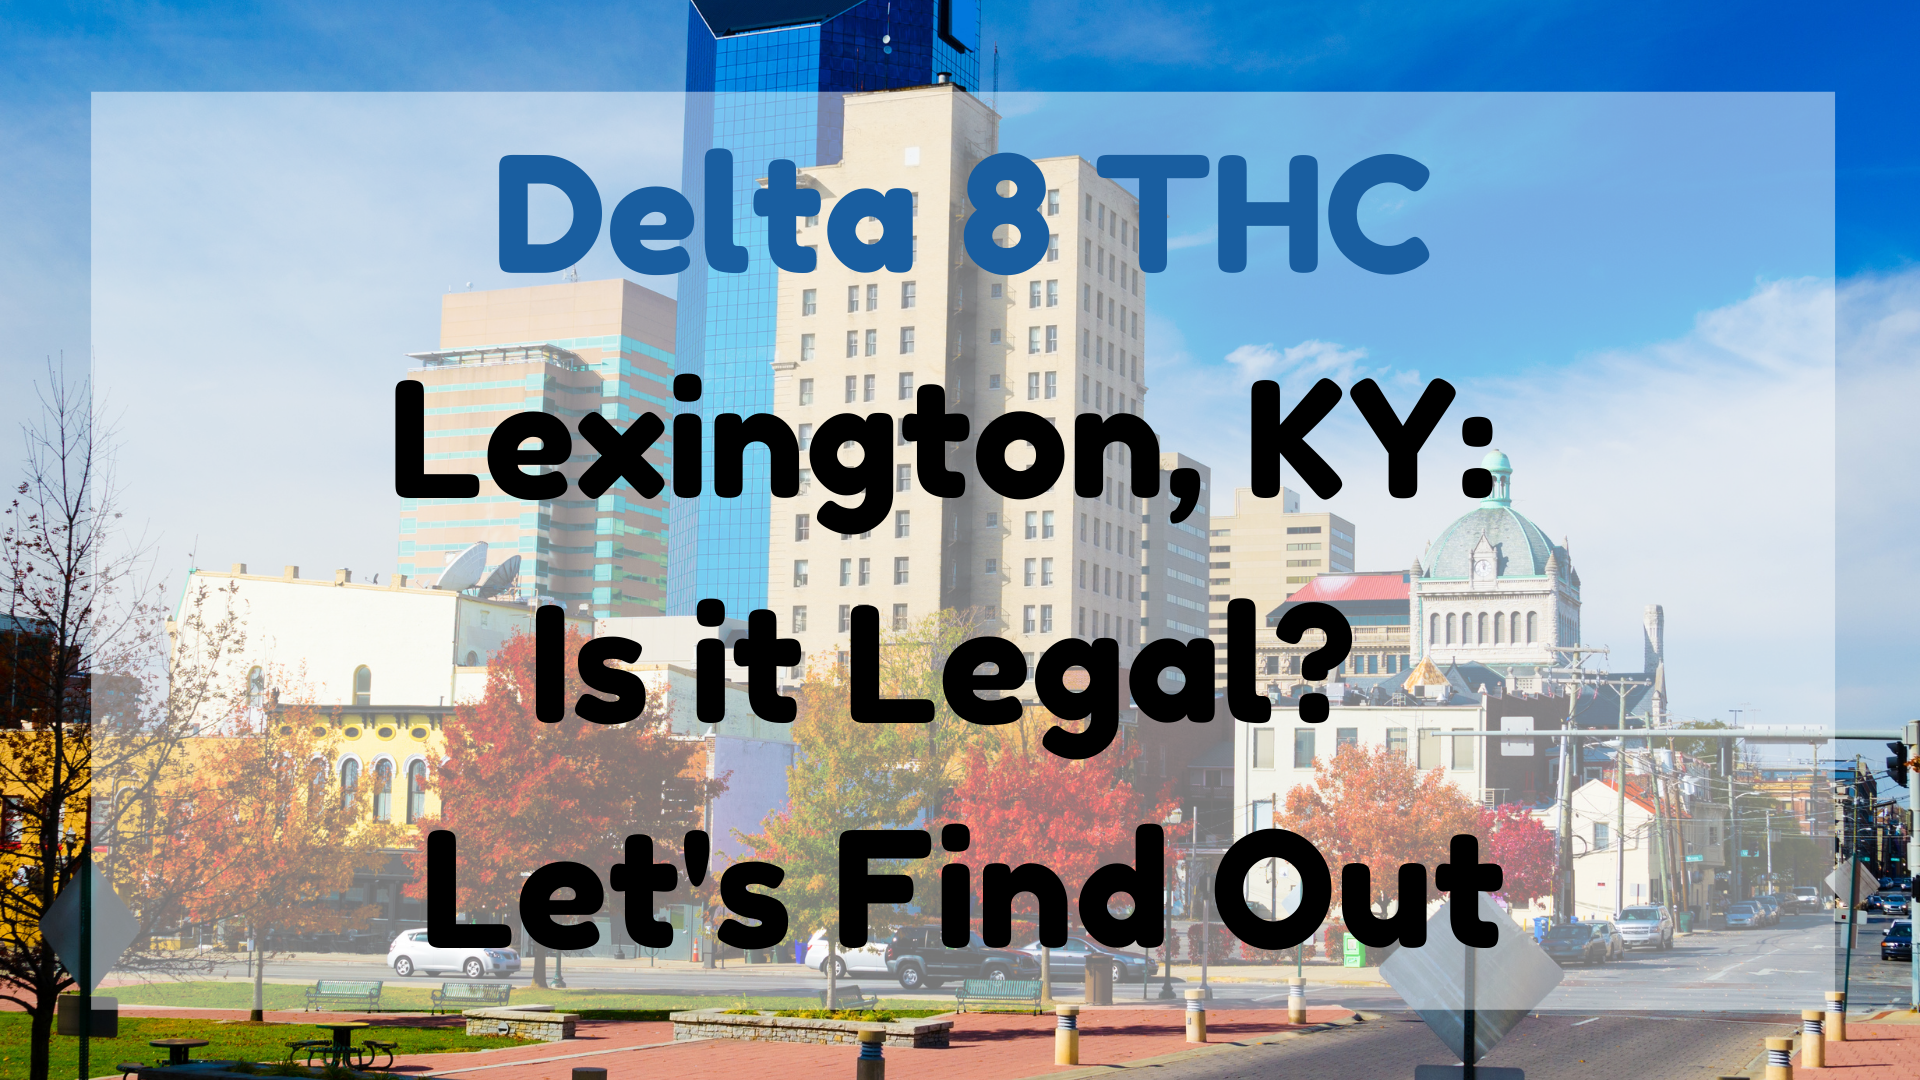 Delta 8 THC Lexington, KY